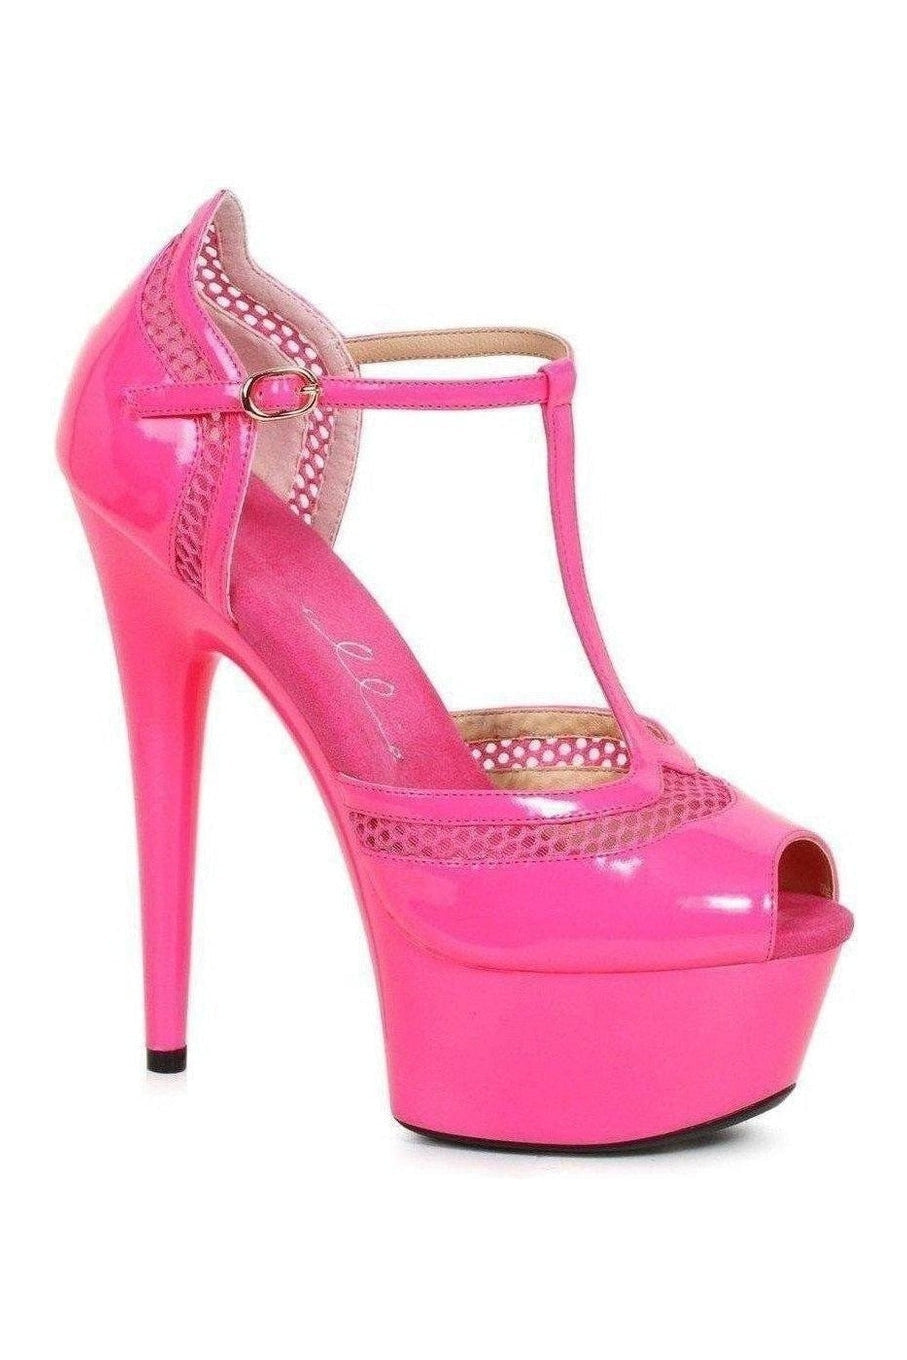 Ellie Shoes Fuchsia Pumps Platform Stripper Shoes | Buy at Sexyshoes.com